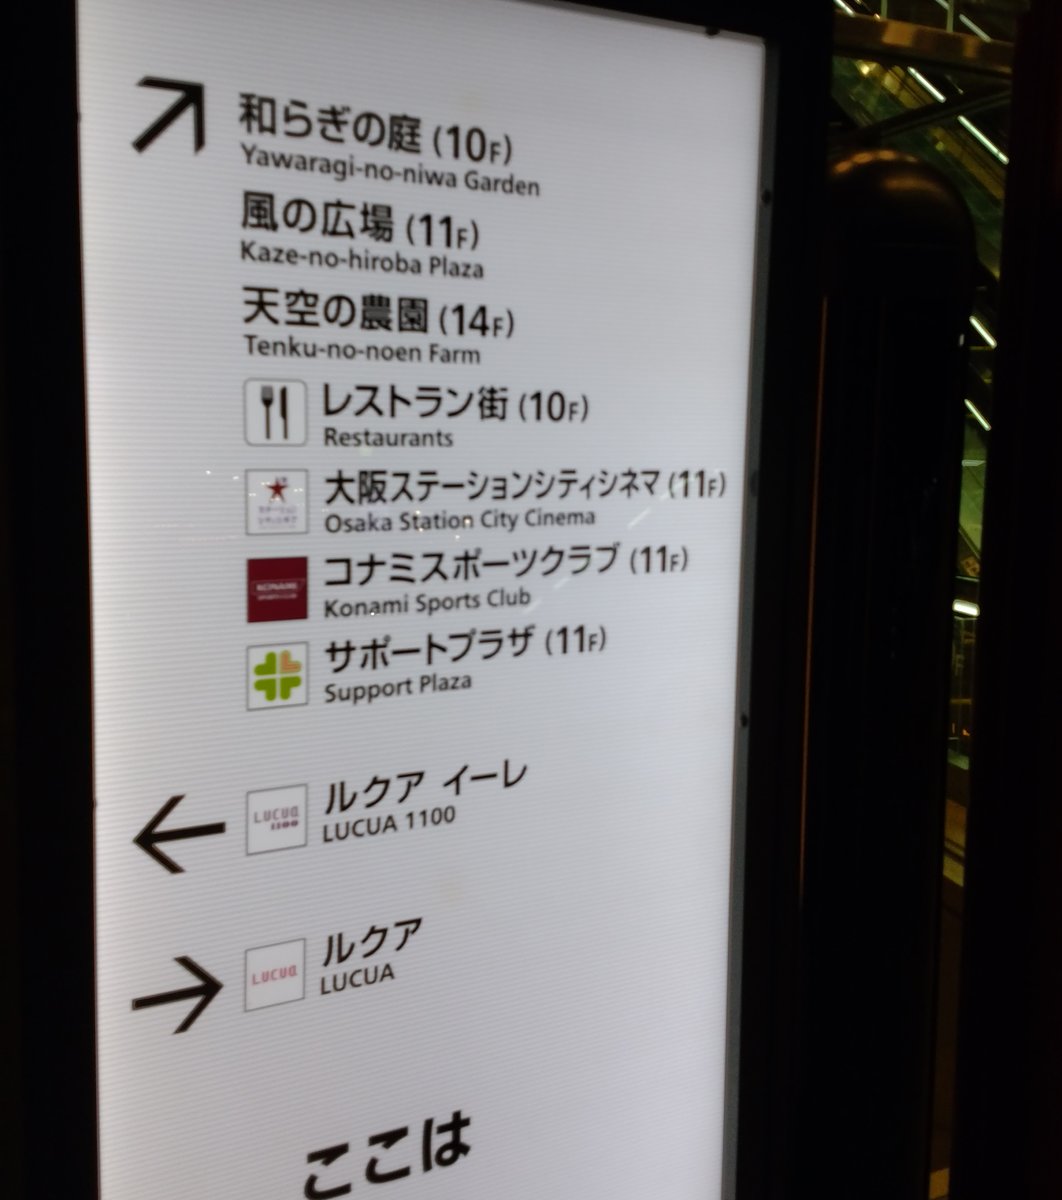 大阪ステーションシティシネマ